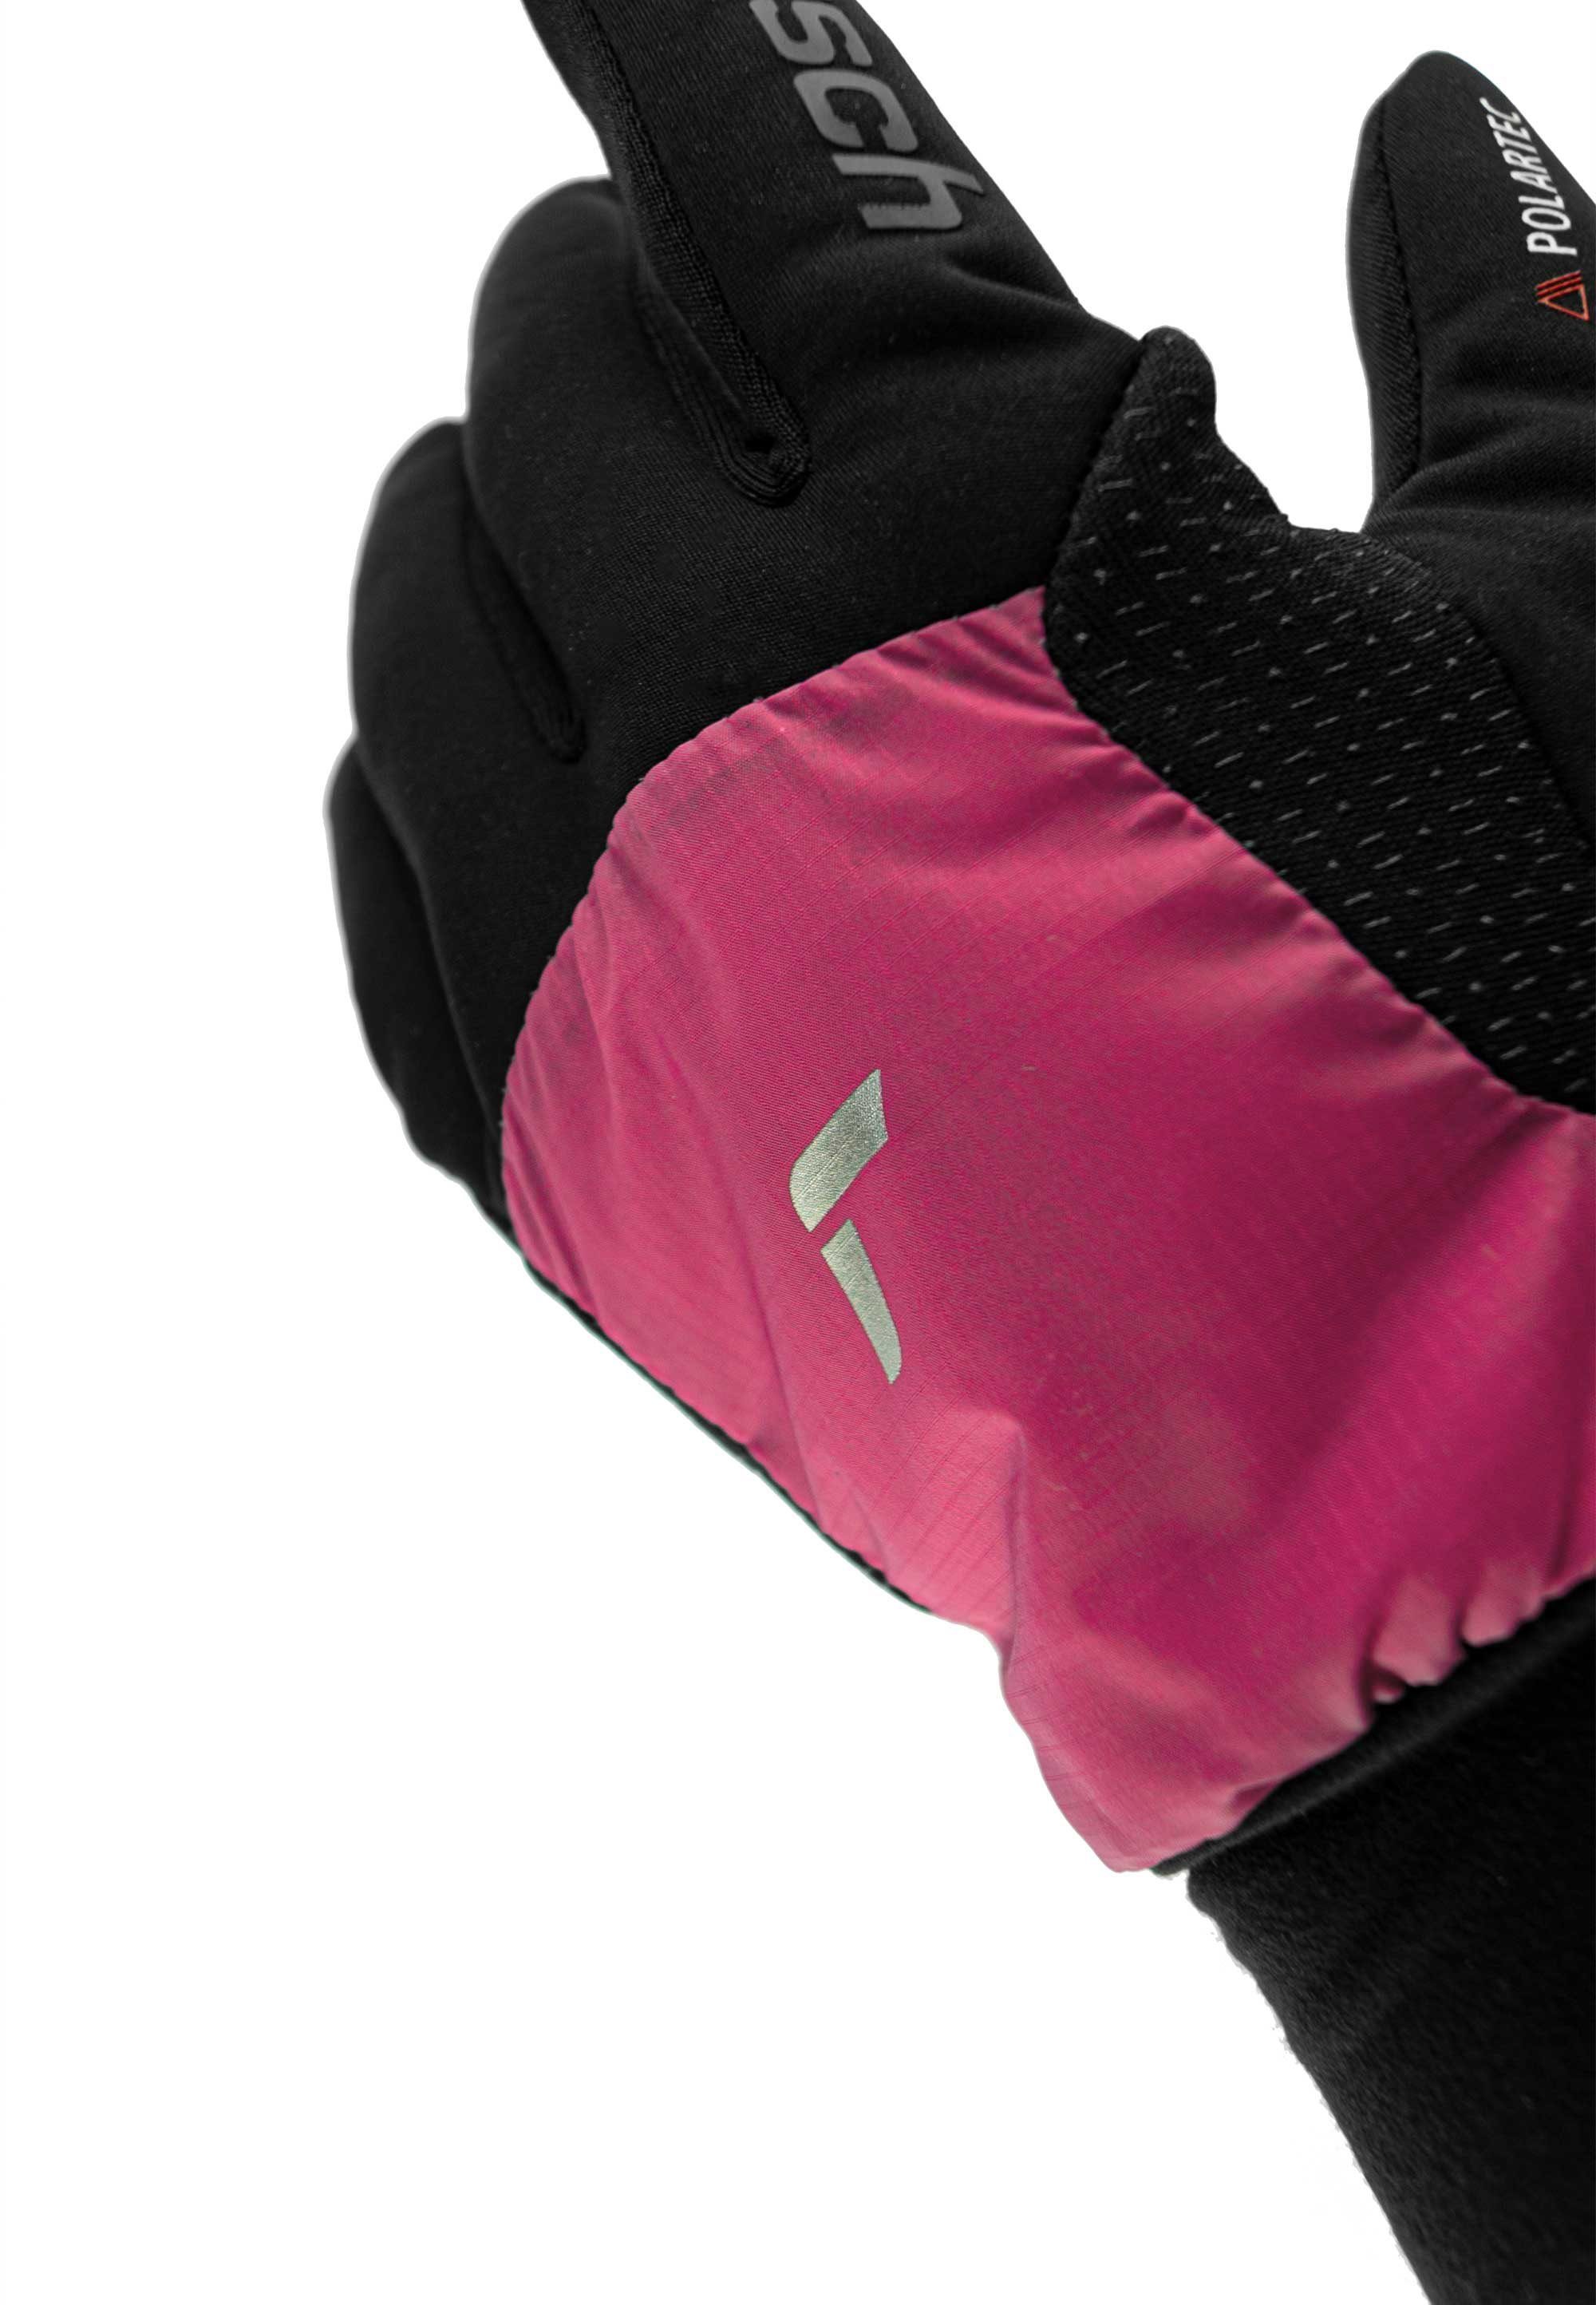 mit Hybrid schwarz-pink Reusch praktischer Touchscreen-Funktion Skihandschuhe Garhwal